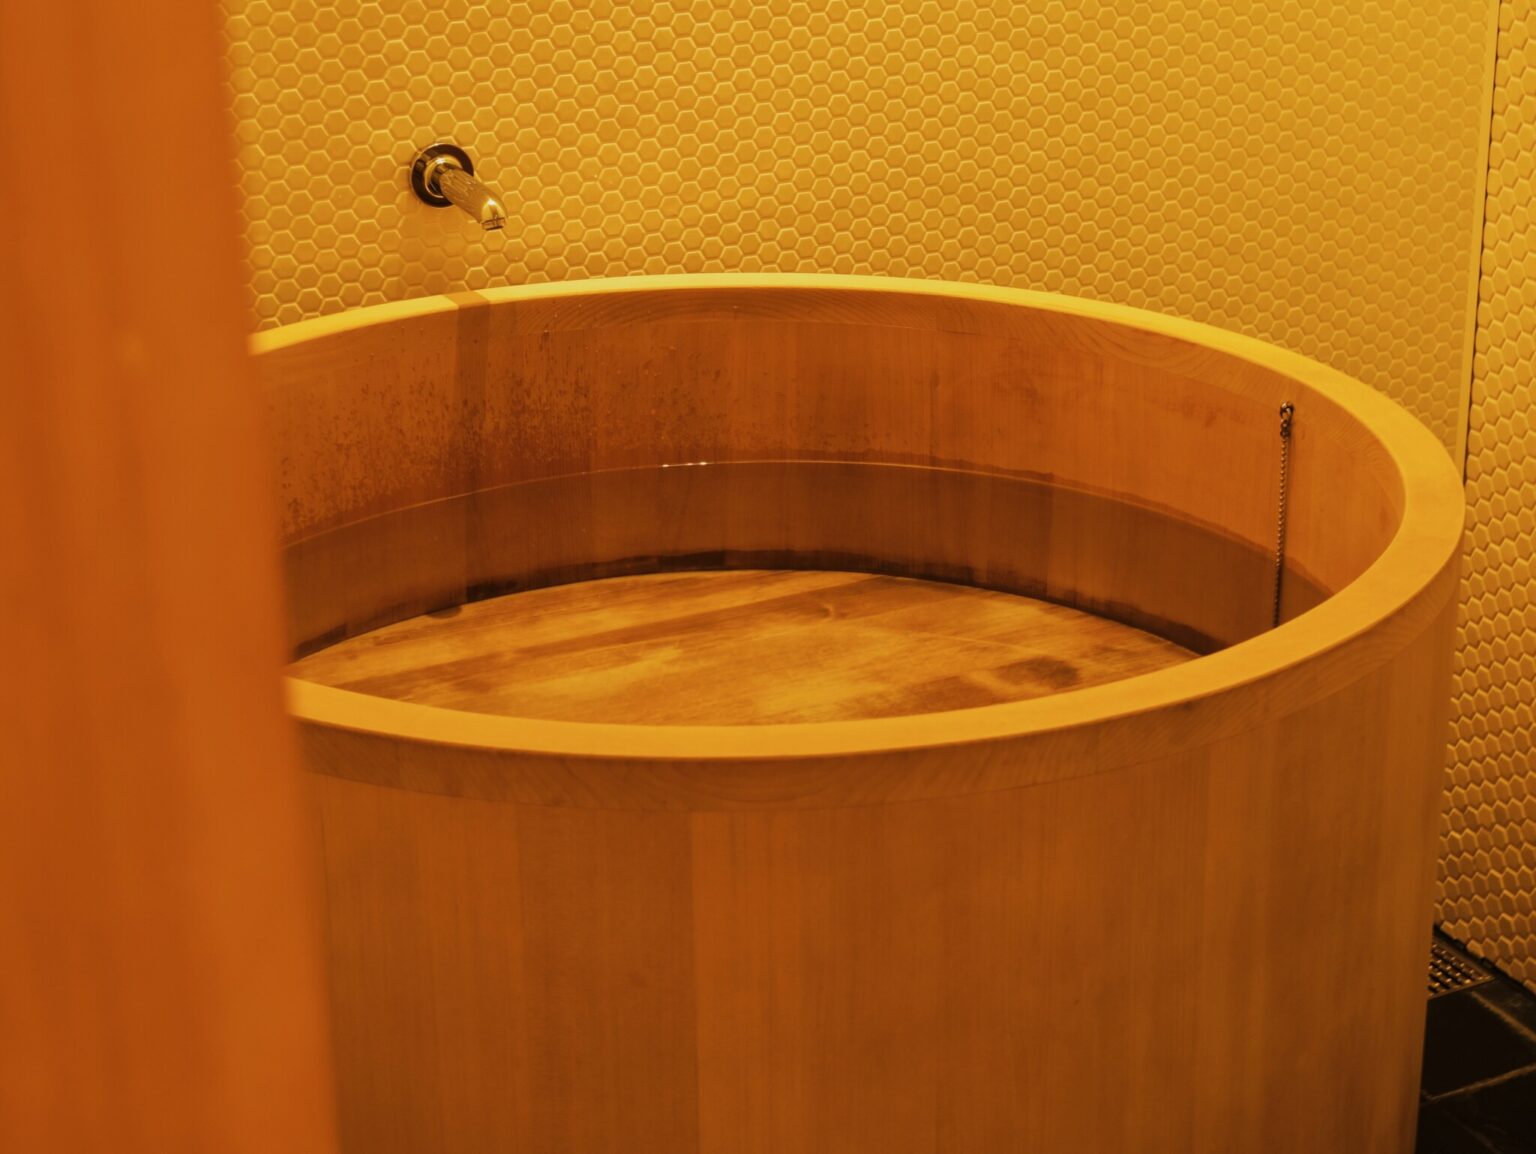 香り豊かな青森檜葉を使用した円型浴槽。お湯をたっぷりいれ、癒しの時間を堪能しました。